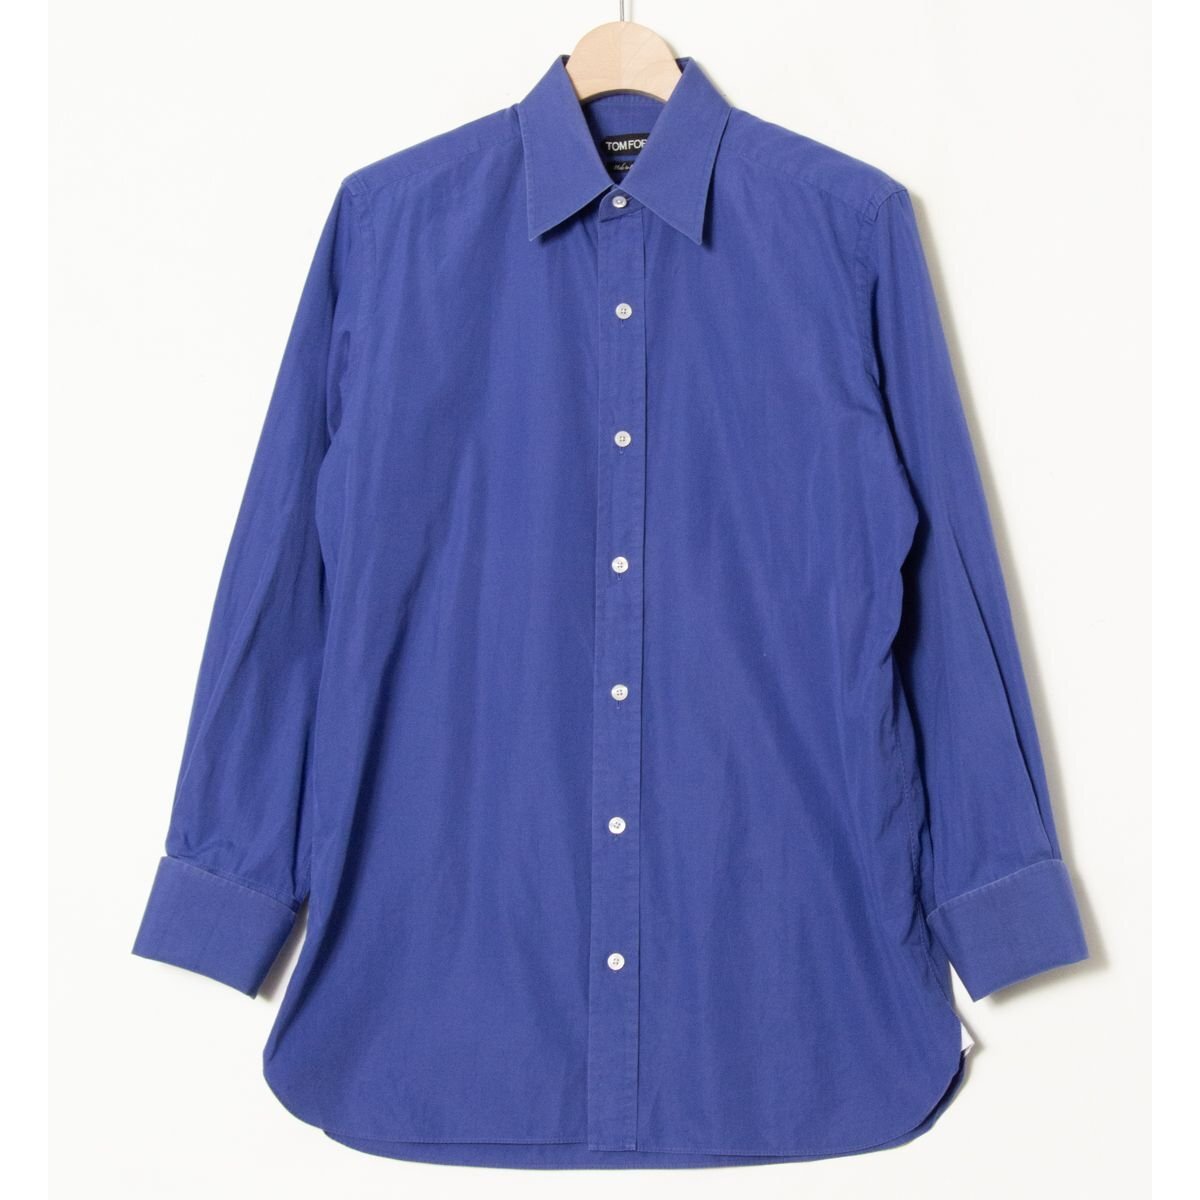 [1 иен старт ] почтовая доставка 0 TOM FORD Tom Ford двойной запонки рубашка с длинным рукавом хлопок 100% высокий бренд синий голубой одноцветный 175/92A Швейцария производства 